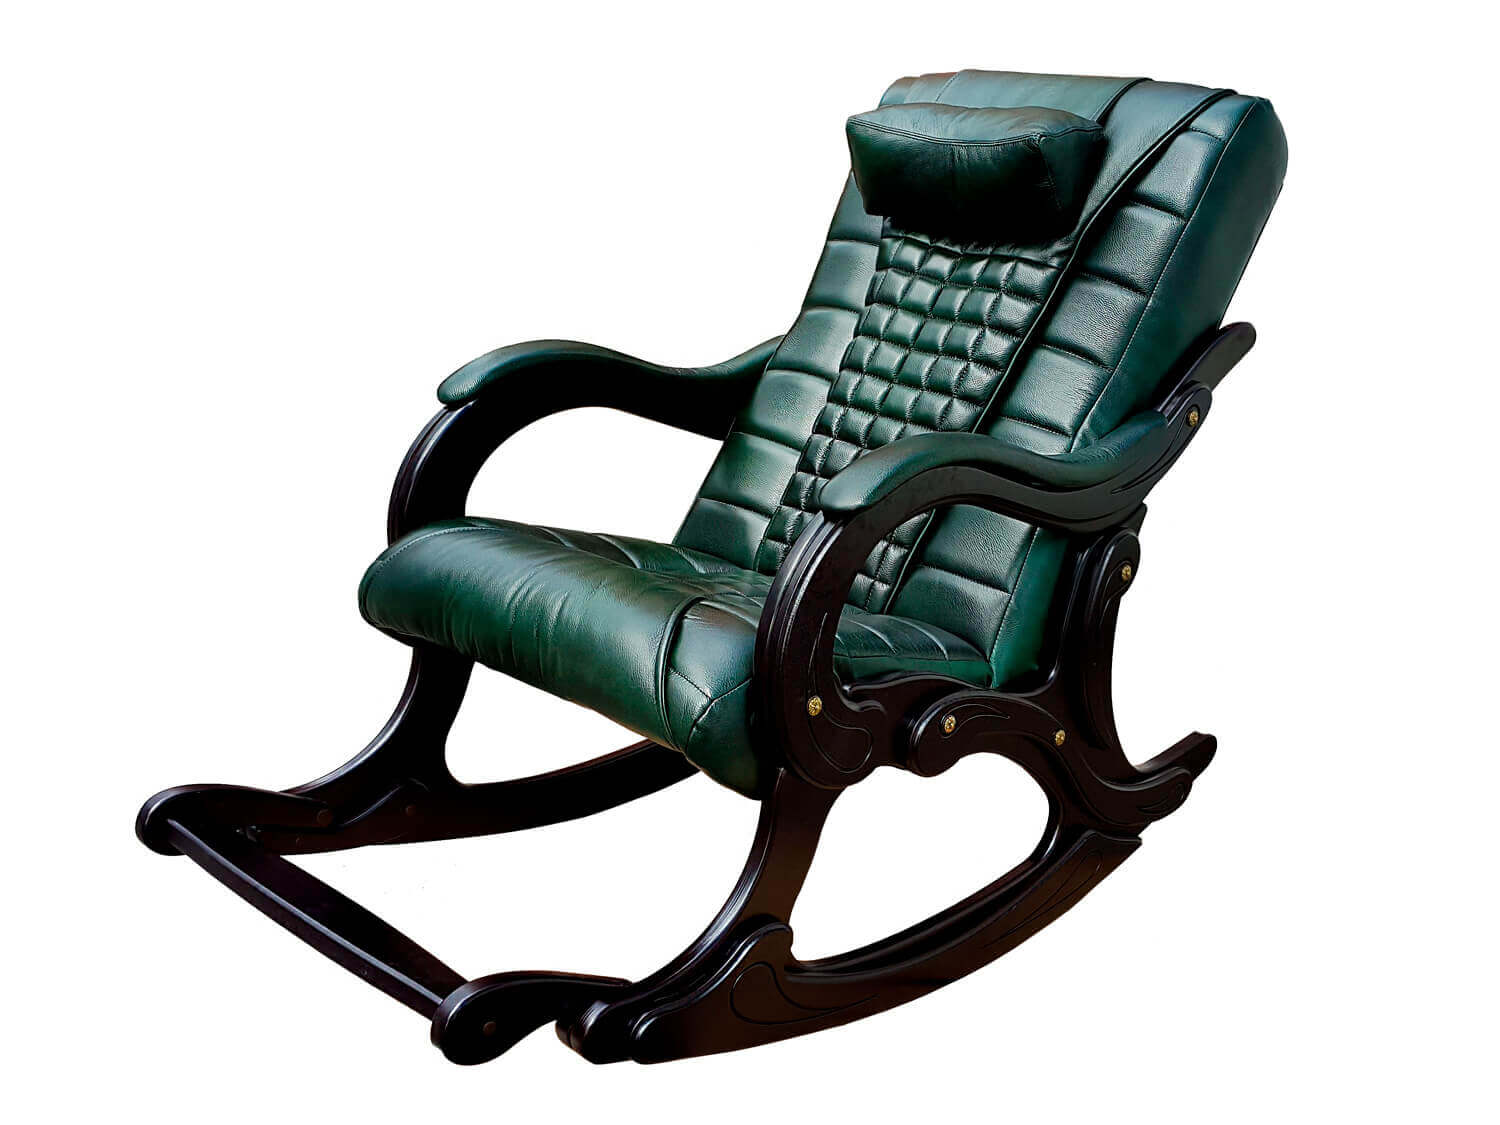 Массажное кресло-качалка Ego Wave EG-2001 Premium Exclusive